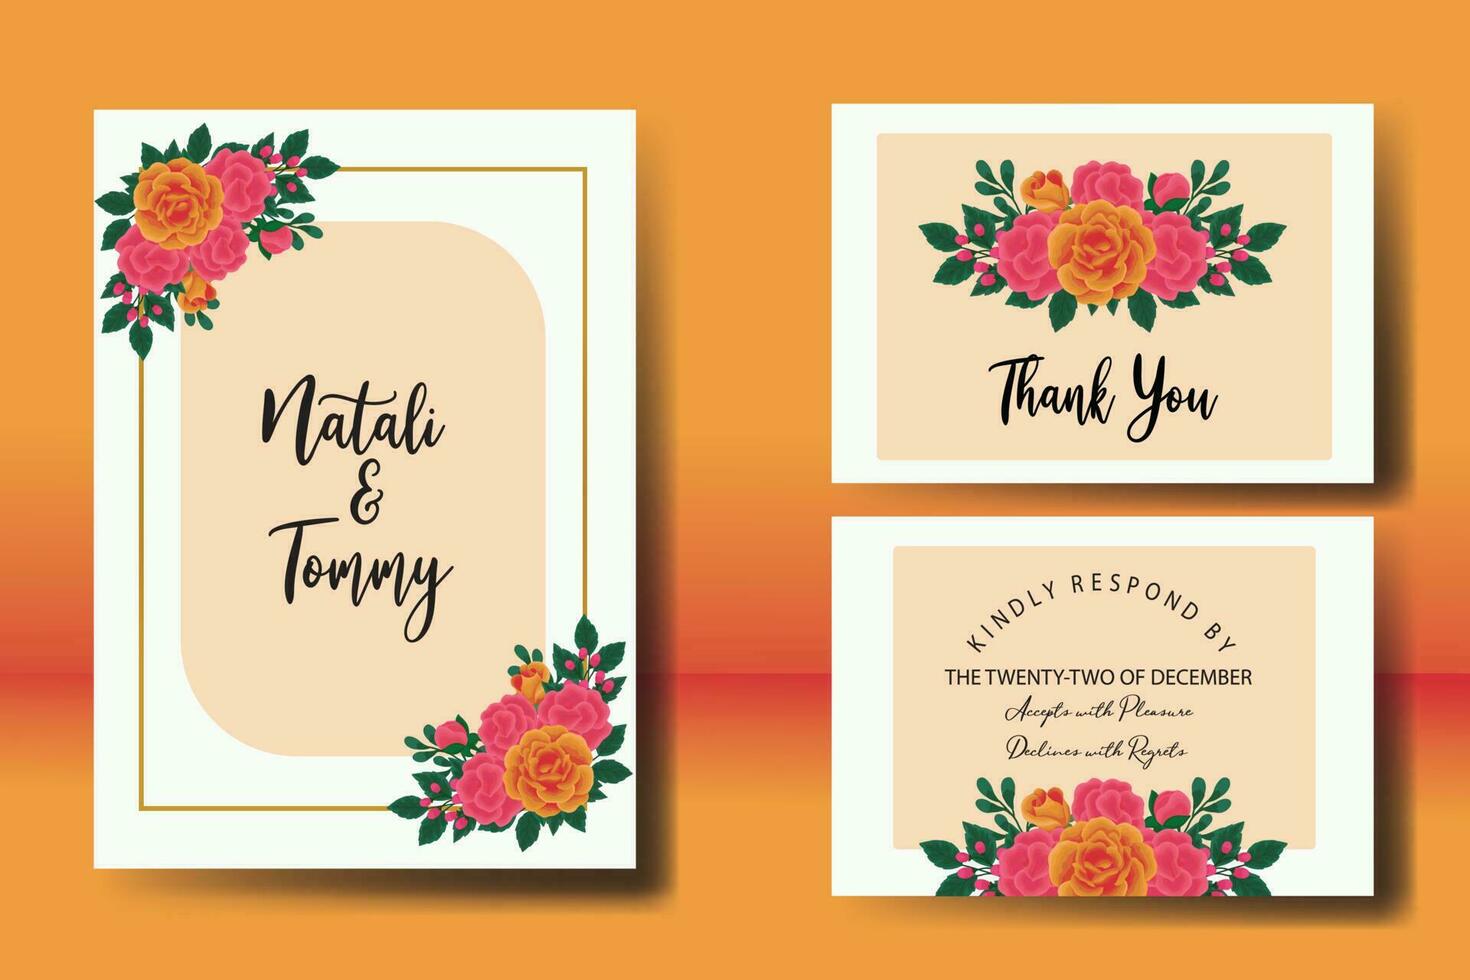 bruiloft uitnodiging kader set, bloemen waterverf digitaal hand- getrokken oranje roos bloem ontwerp uitnodiging kaart sjabloon vector